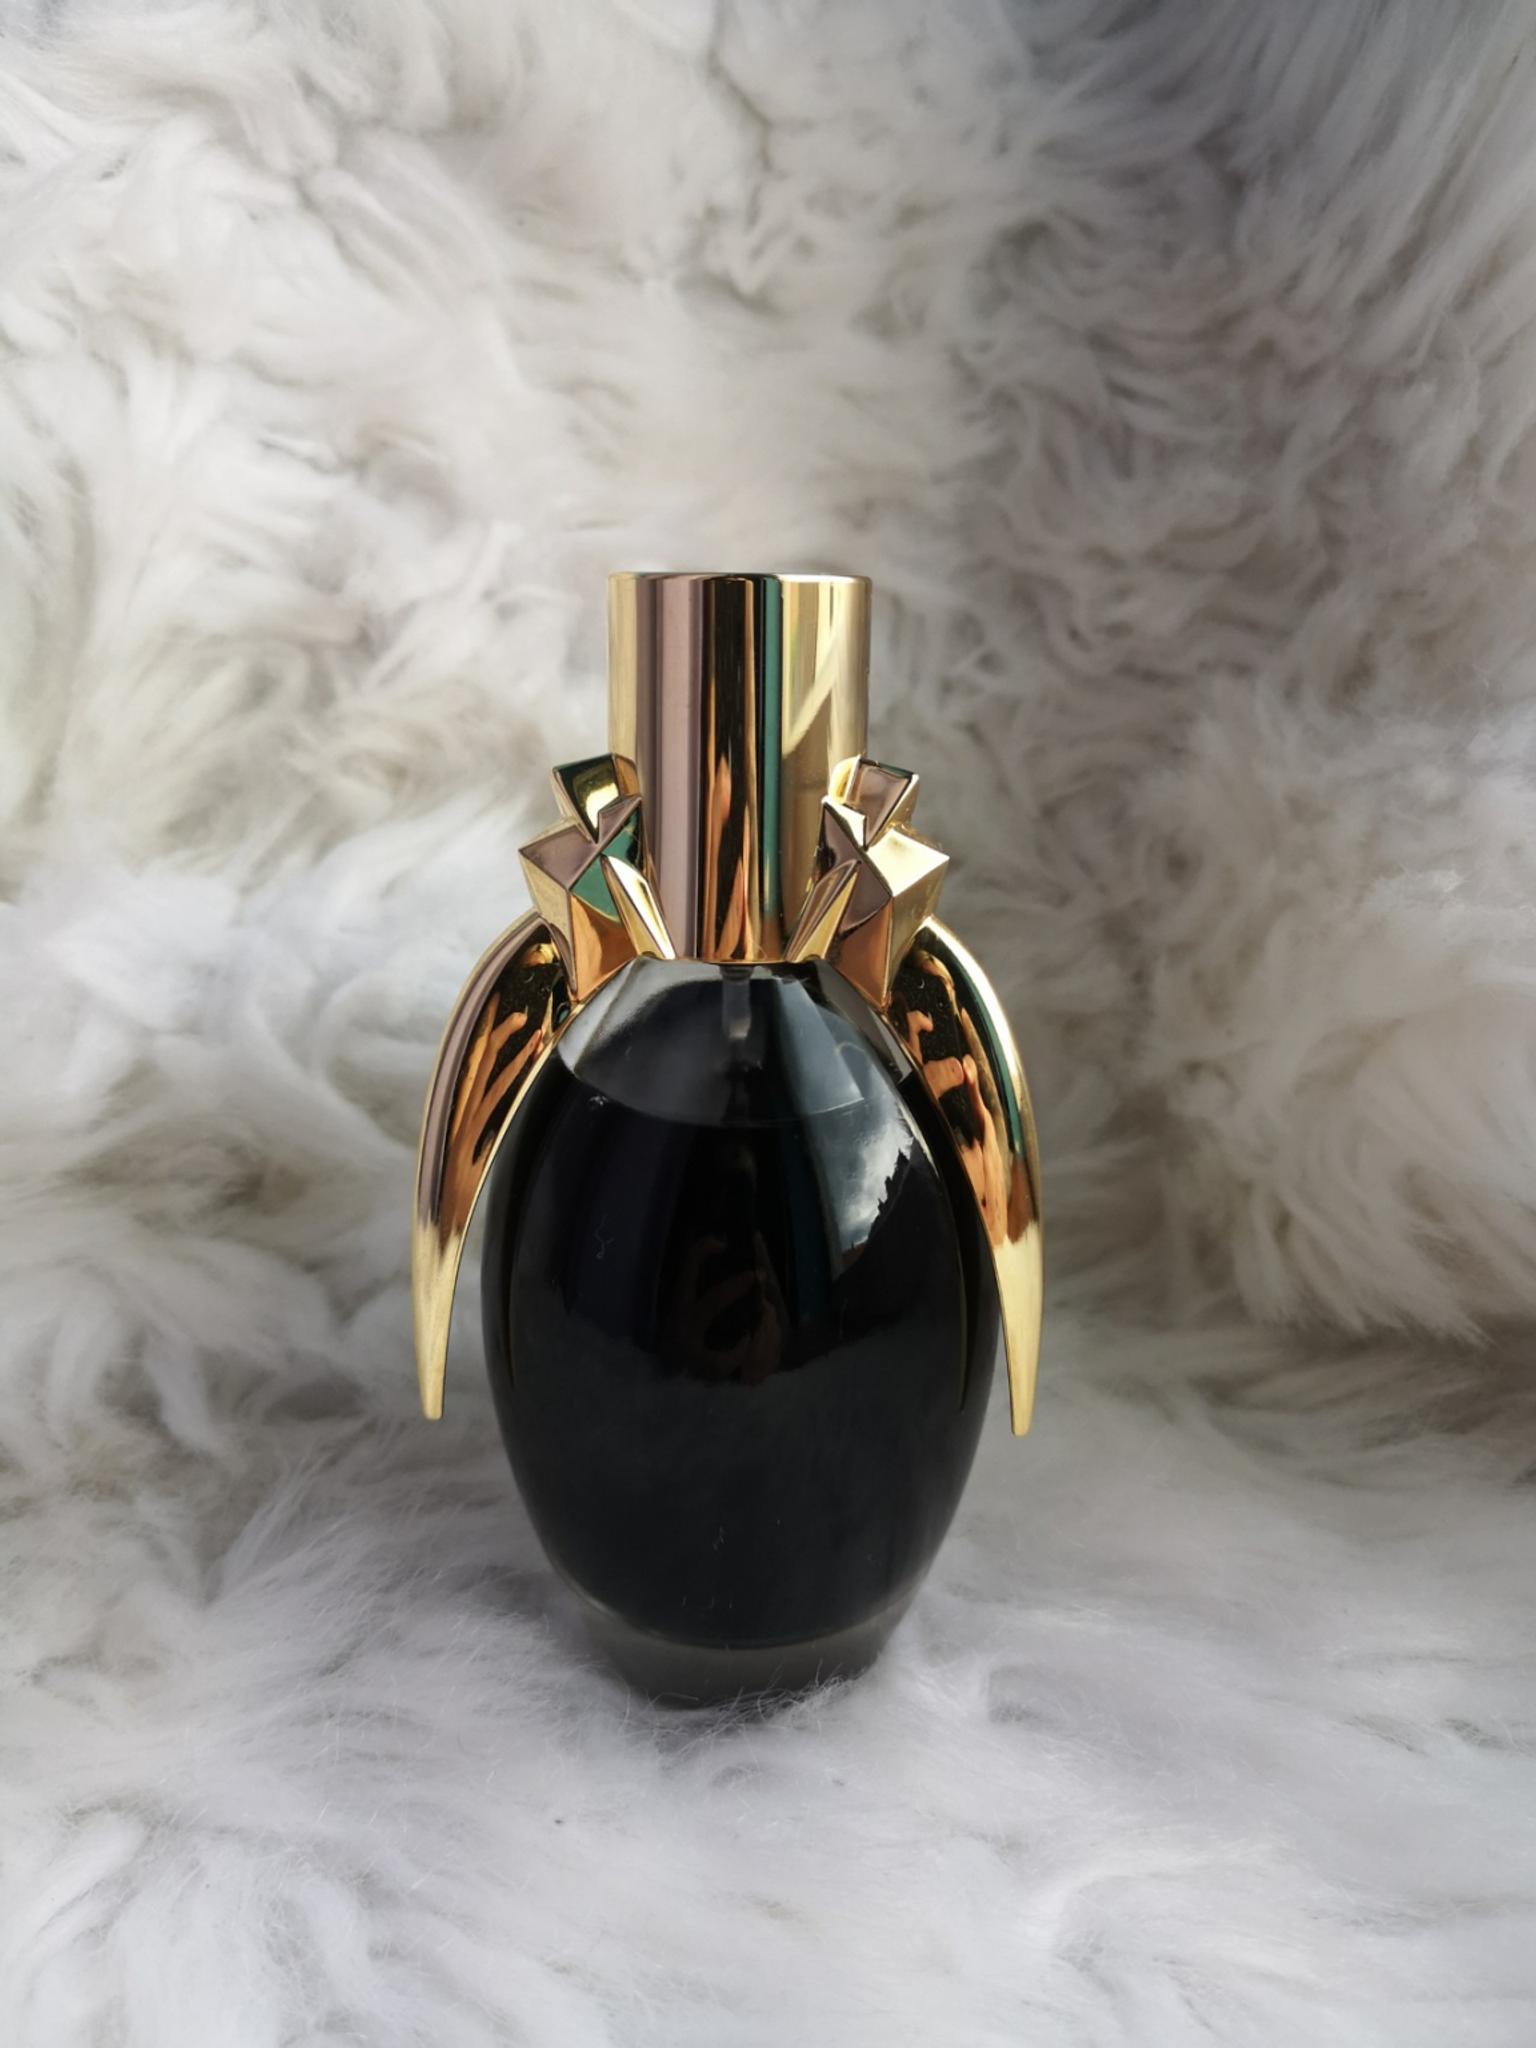 Lady Gaga The Fame Parfum 50ml Rar In 2514 Gemeinde Traiskirchen Fur 50 00 Zum Verkauf Shpock At